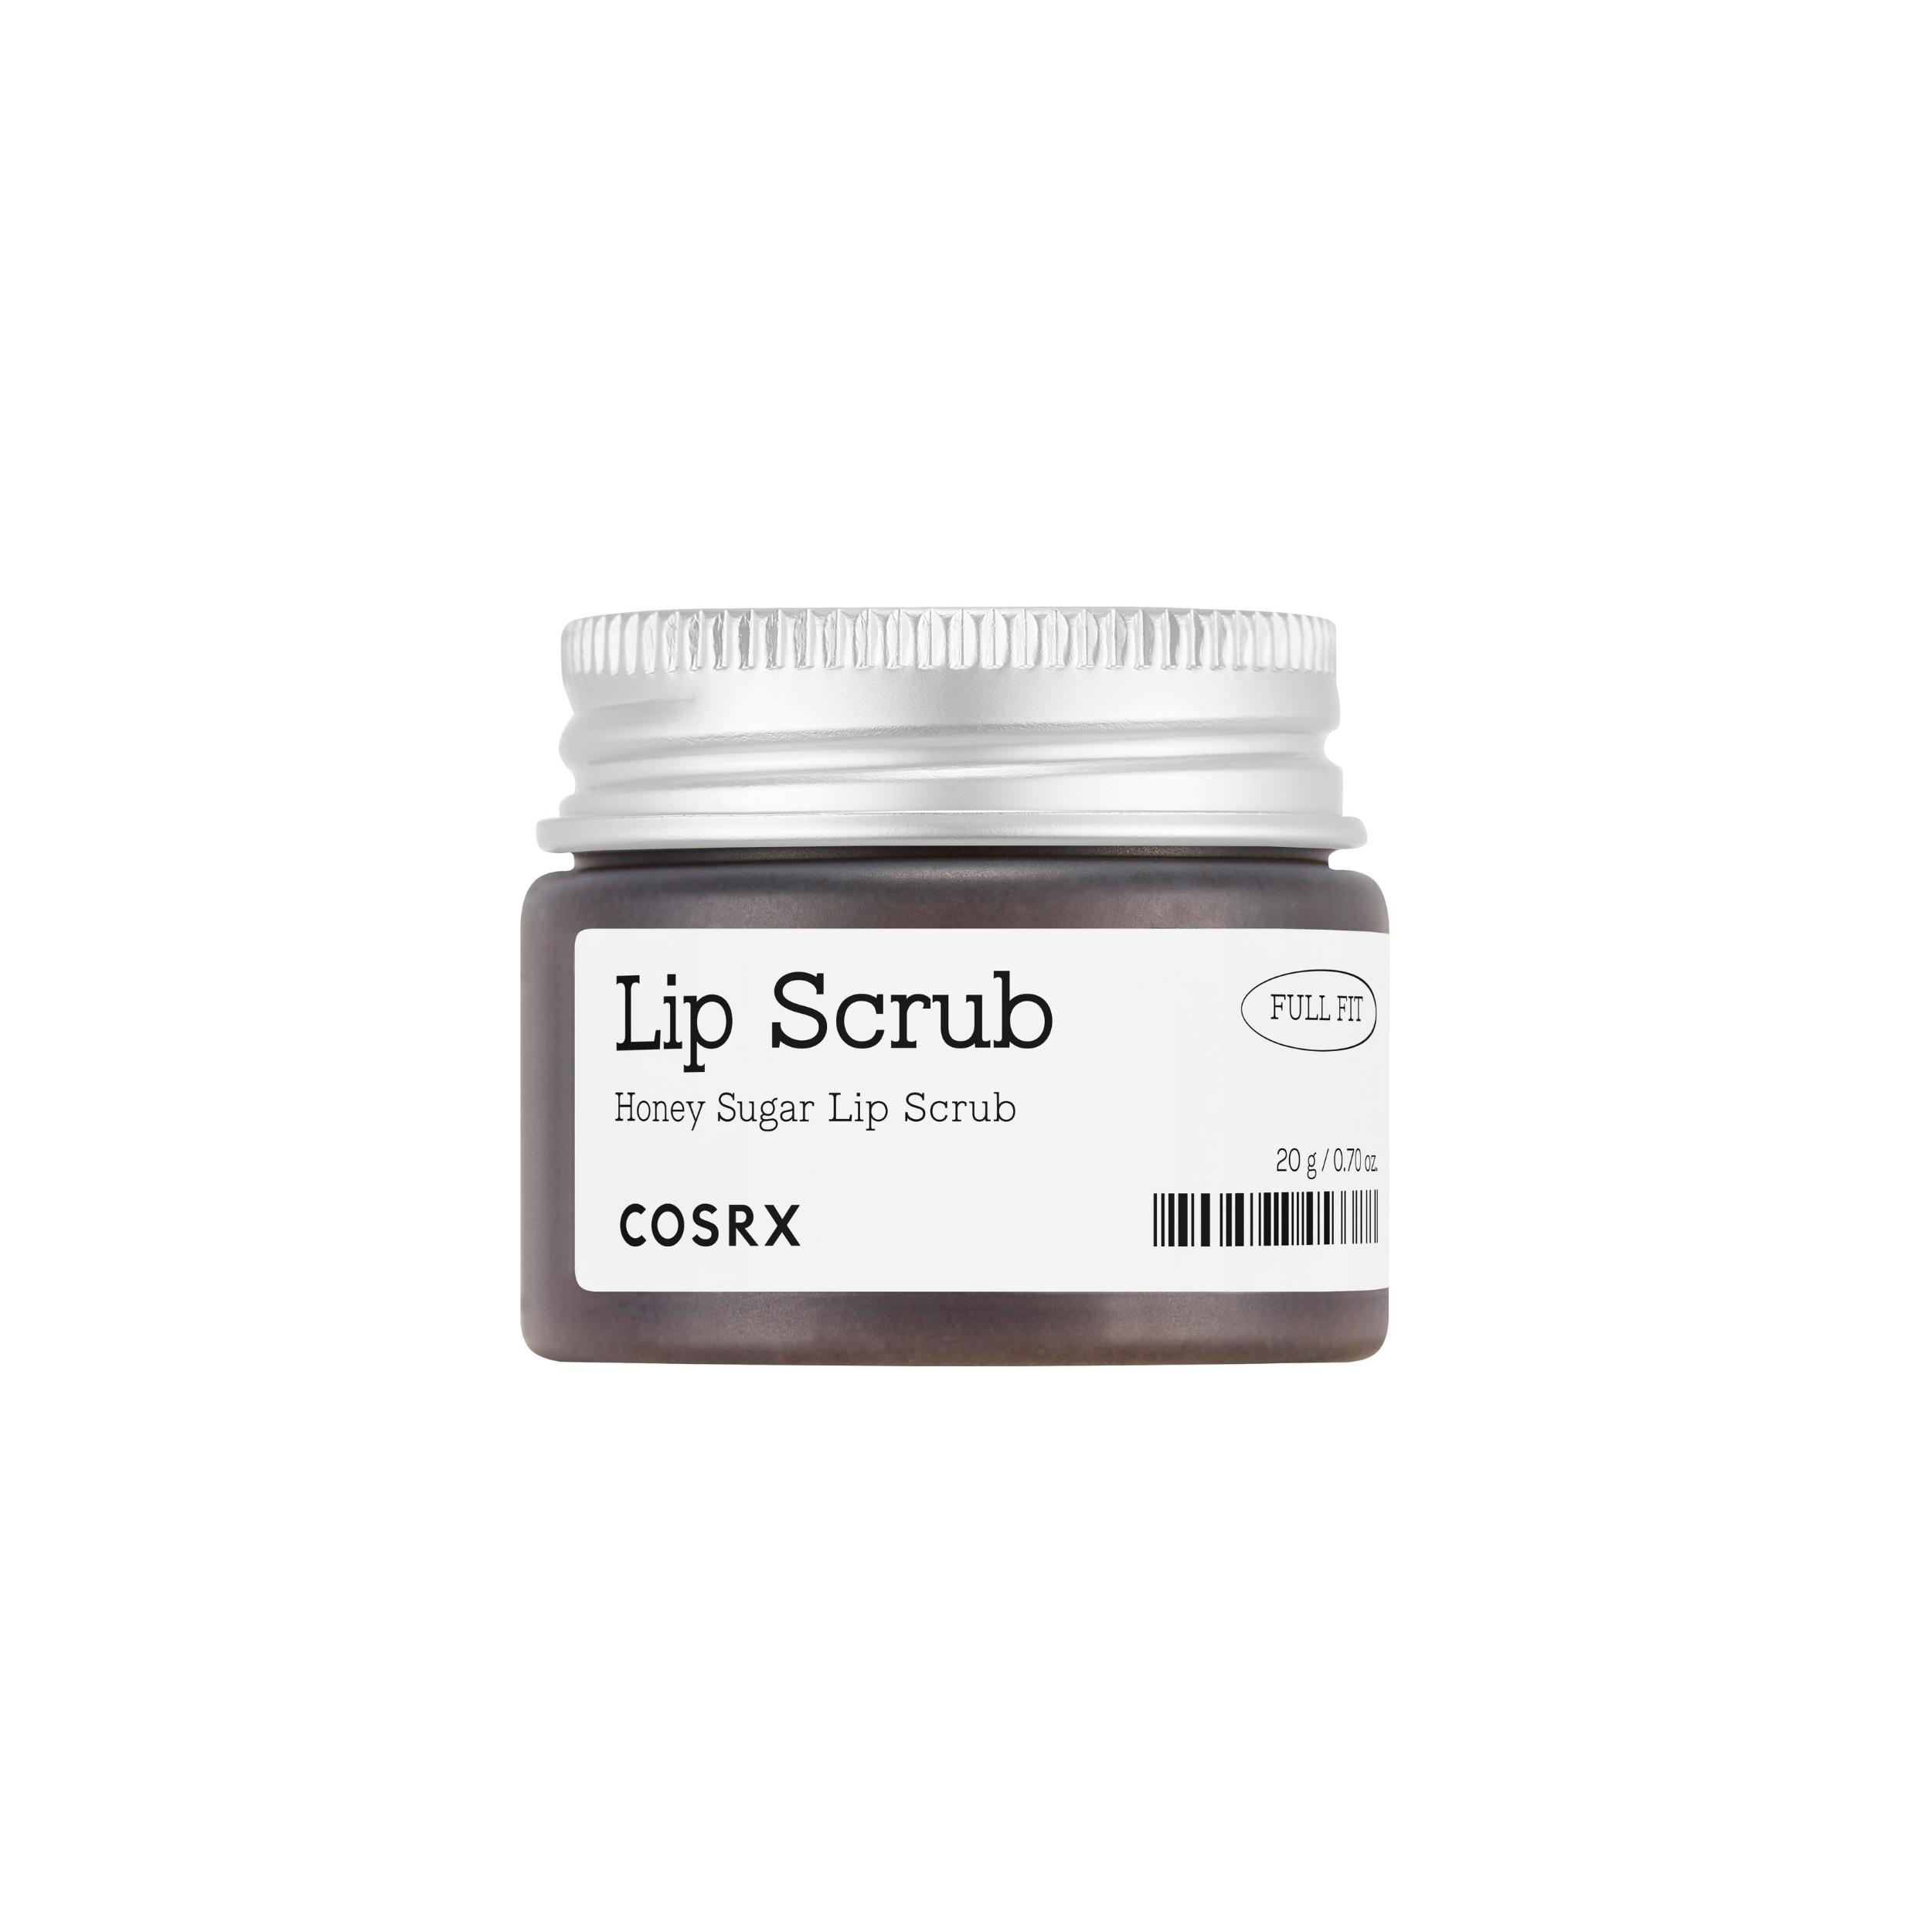 COSRX Full Fit Honey Sugar Lip Scrub, 20 g